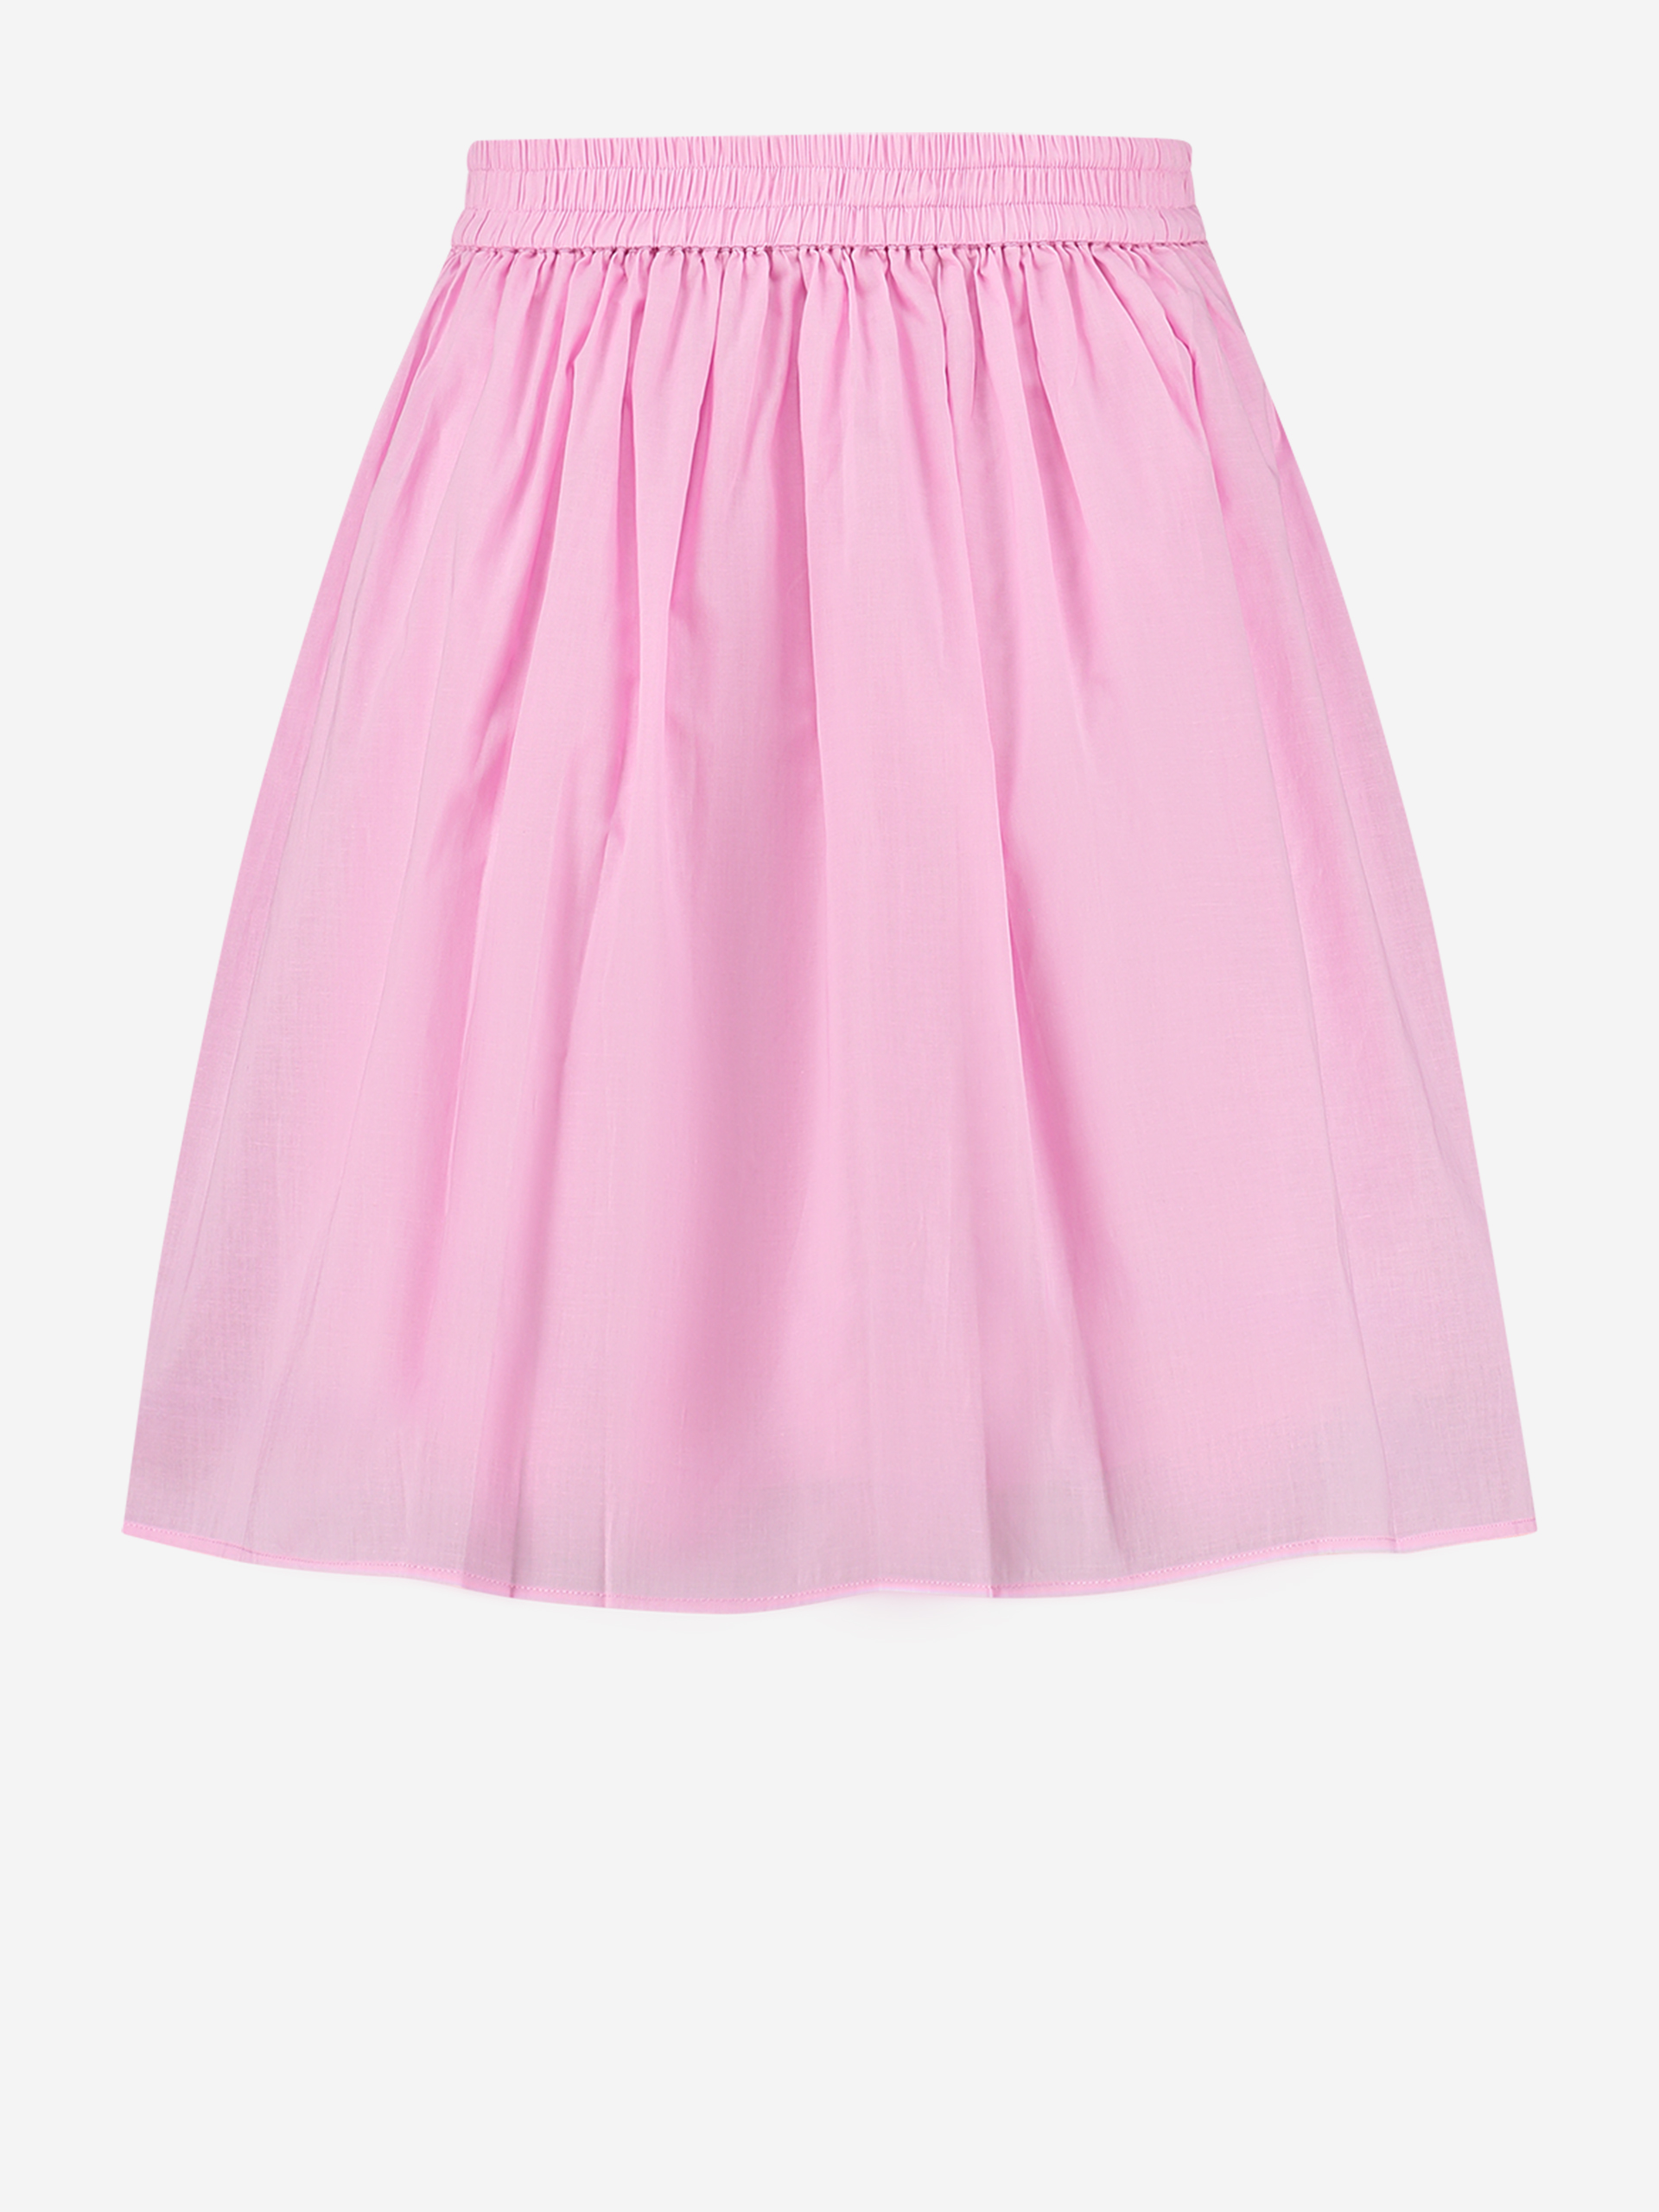 A-line skirt with elastic waistband